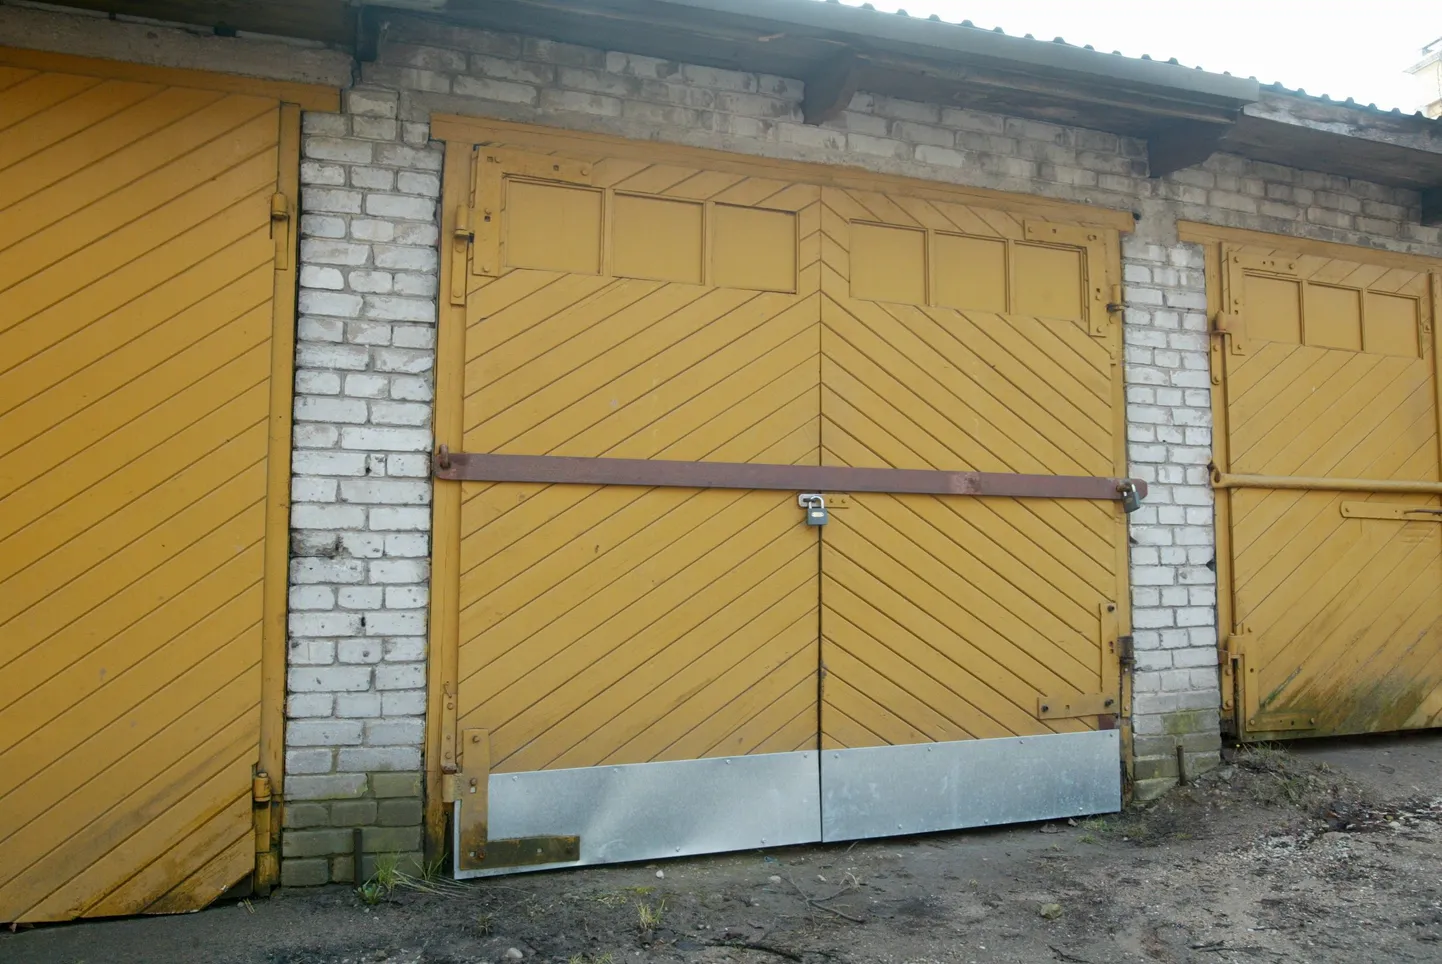 Põhja-Tallinna linnaosas asuvad mitmed hooletusse jäetud garaažid.